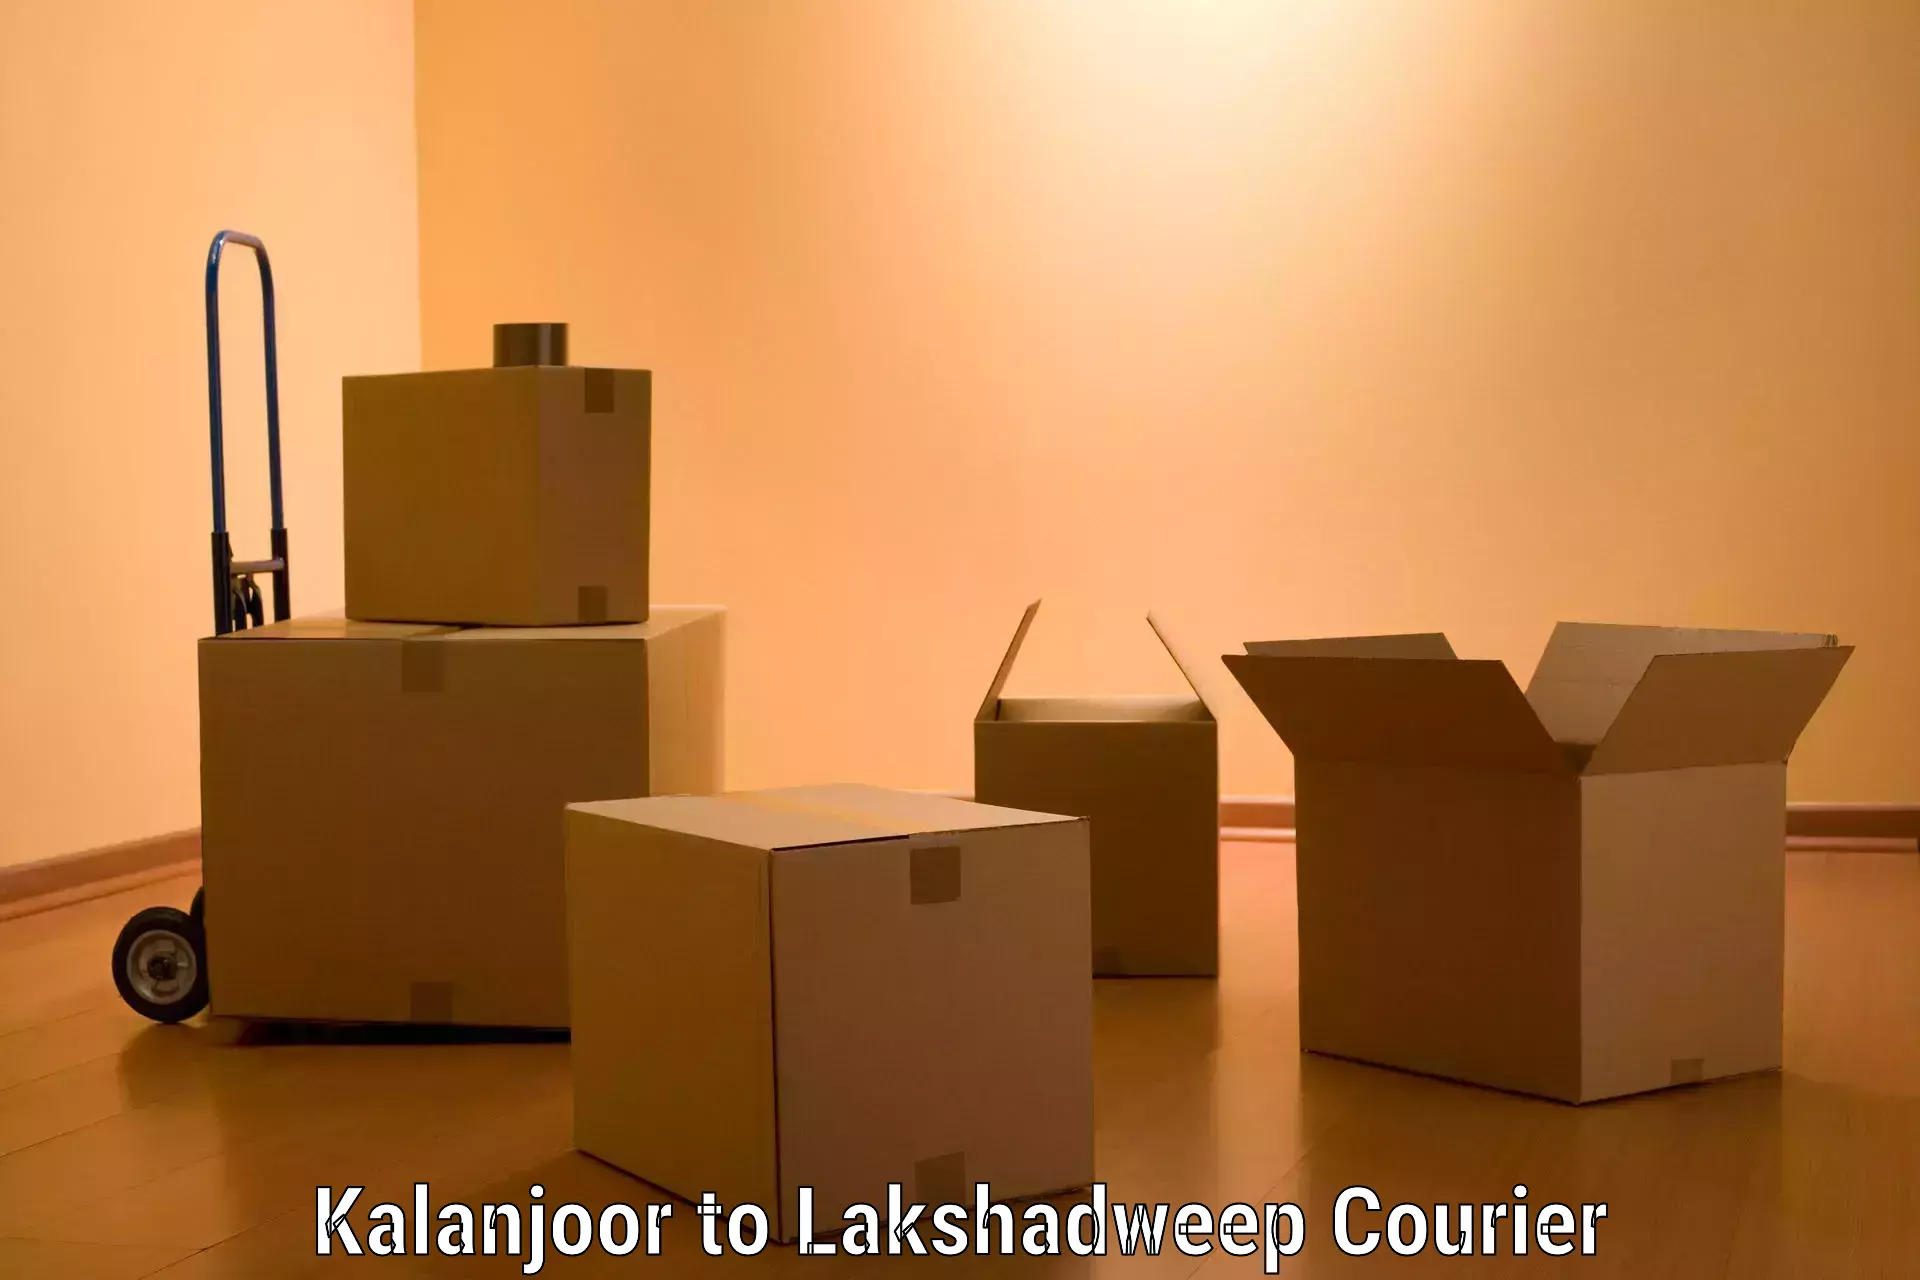 Moving and packing experts Kalanjoor to Lakshadweep